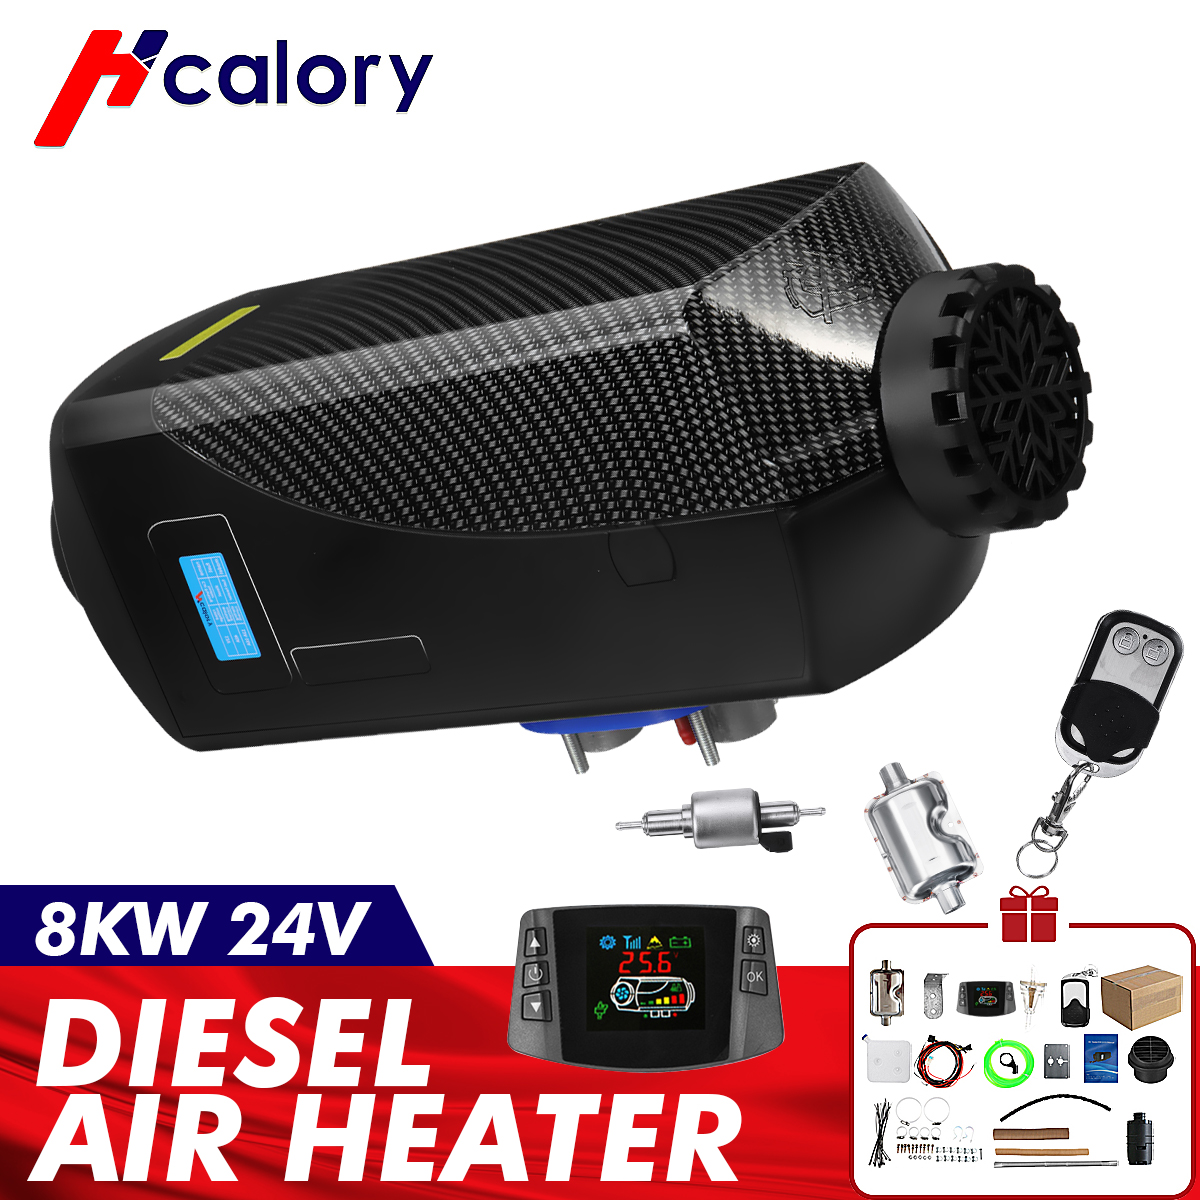 Chauffage à air Diesel HCalory 8KW 24V Heater Réchauffeur d'air